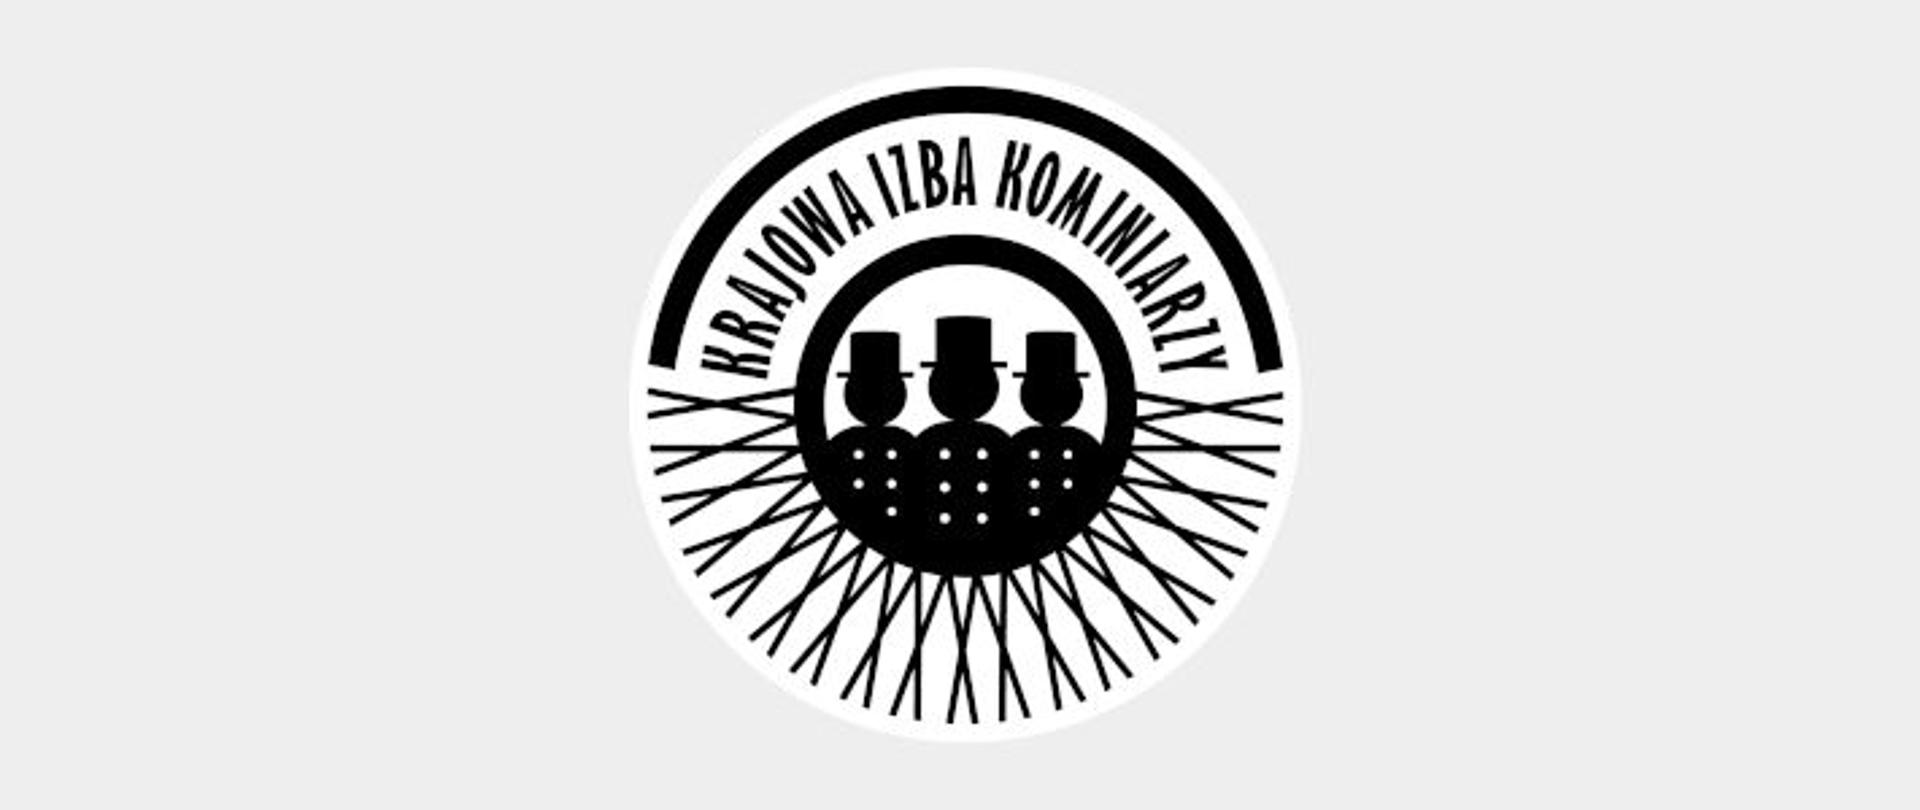 Zdjęcie przedstawia 3 kominiarzy na logo z napisem Krajowa Izba Kominiarzy